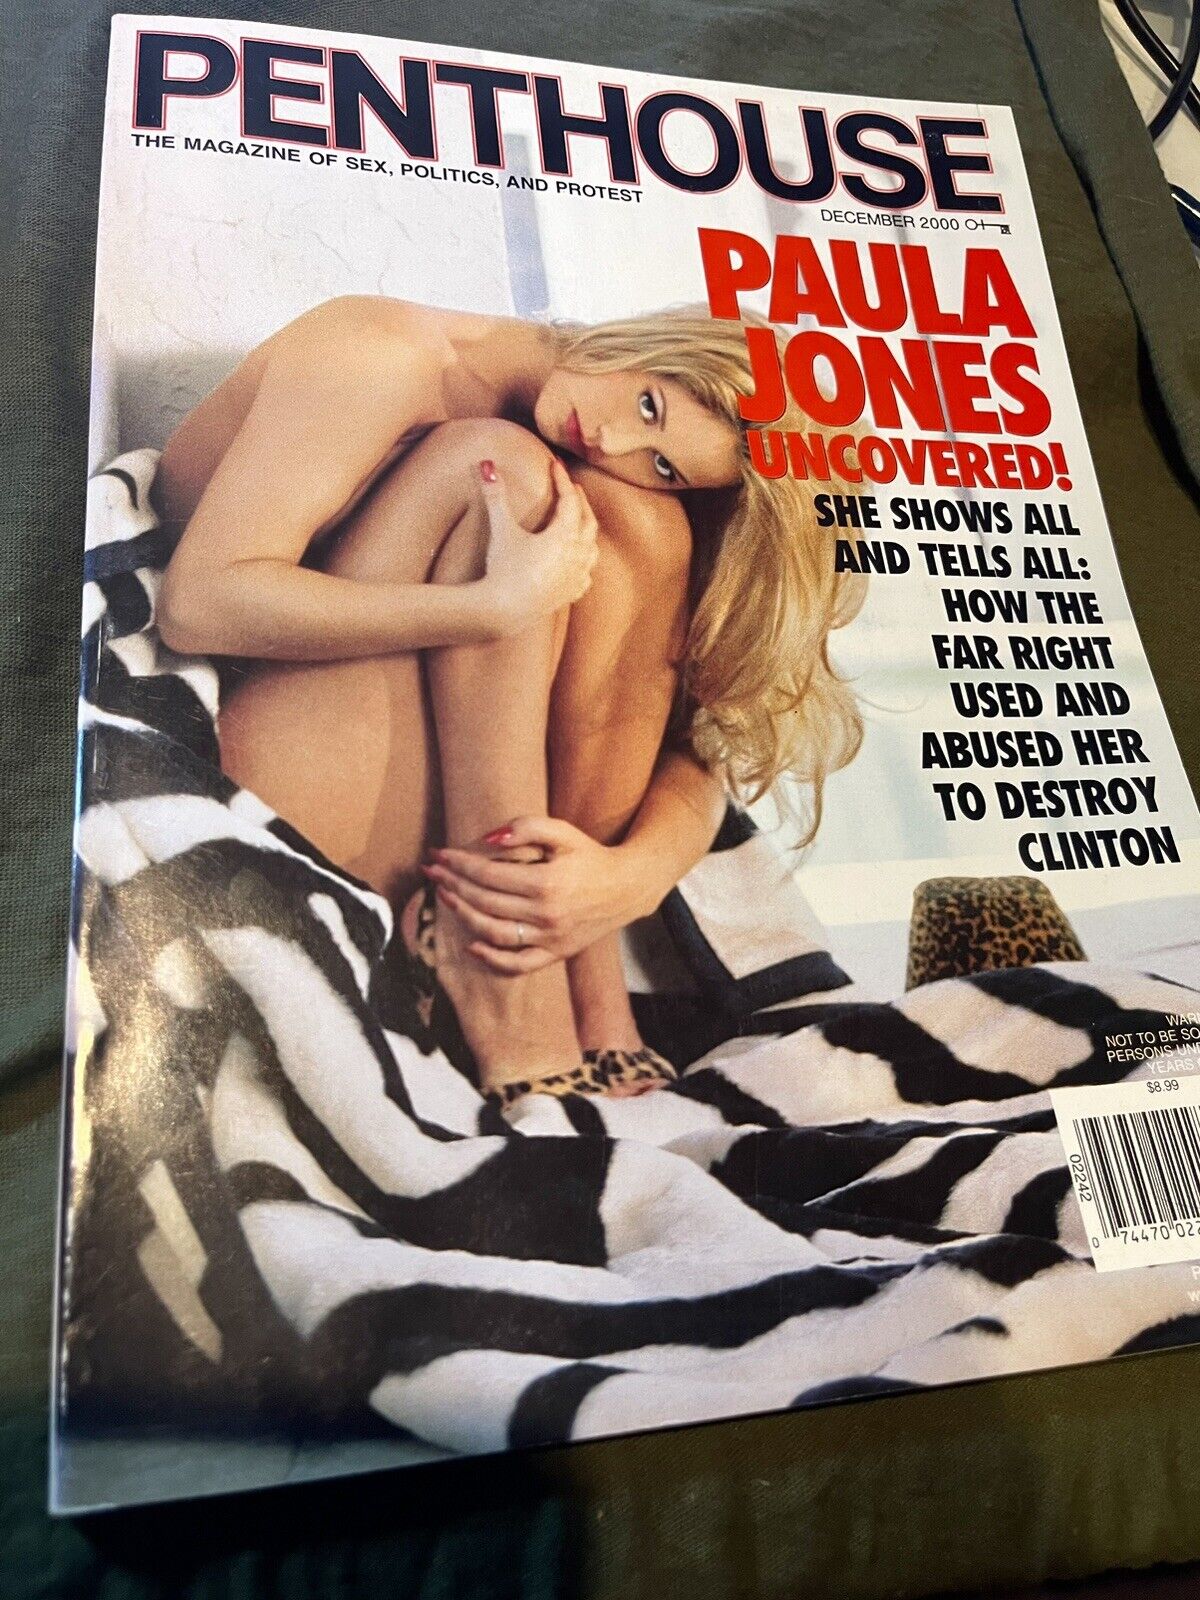 brian iott recommends Paula Jones Nude Pics